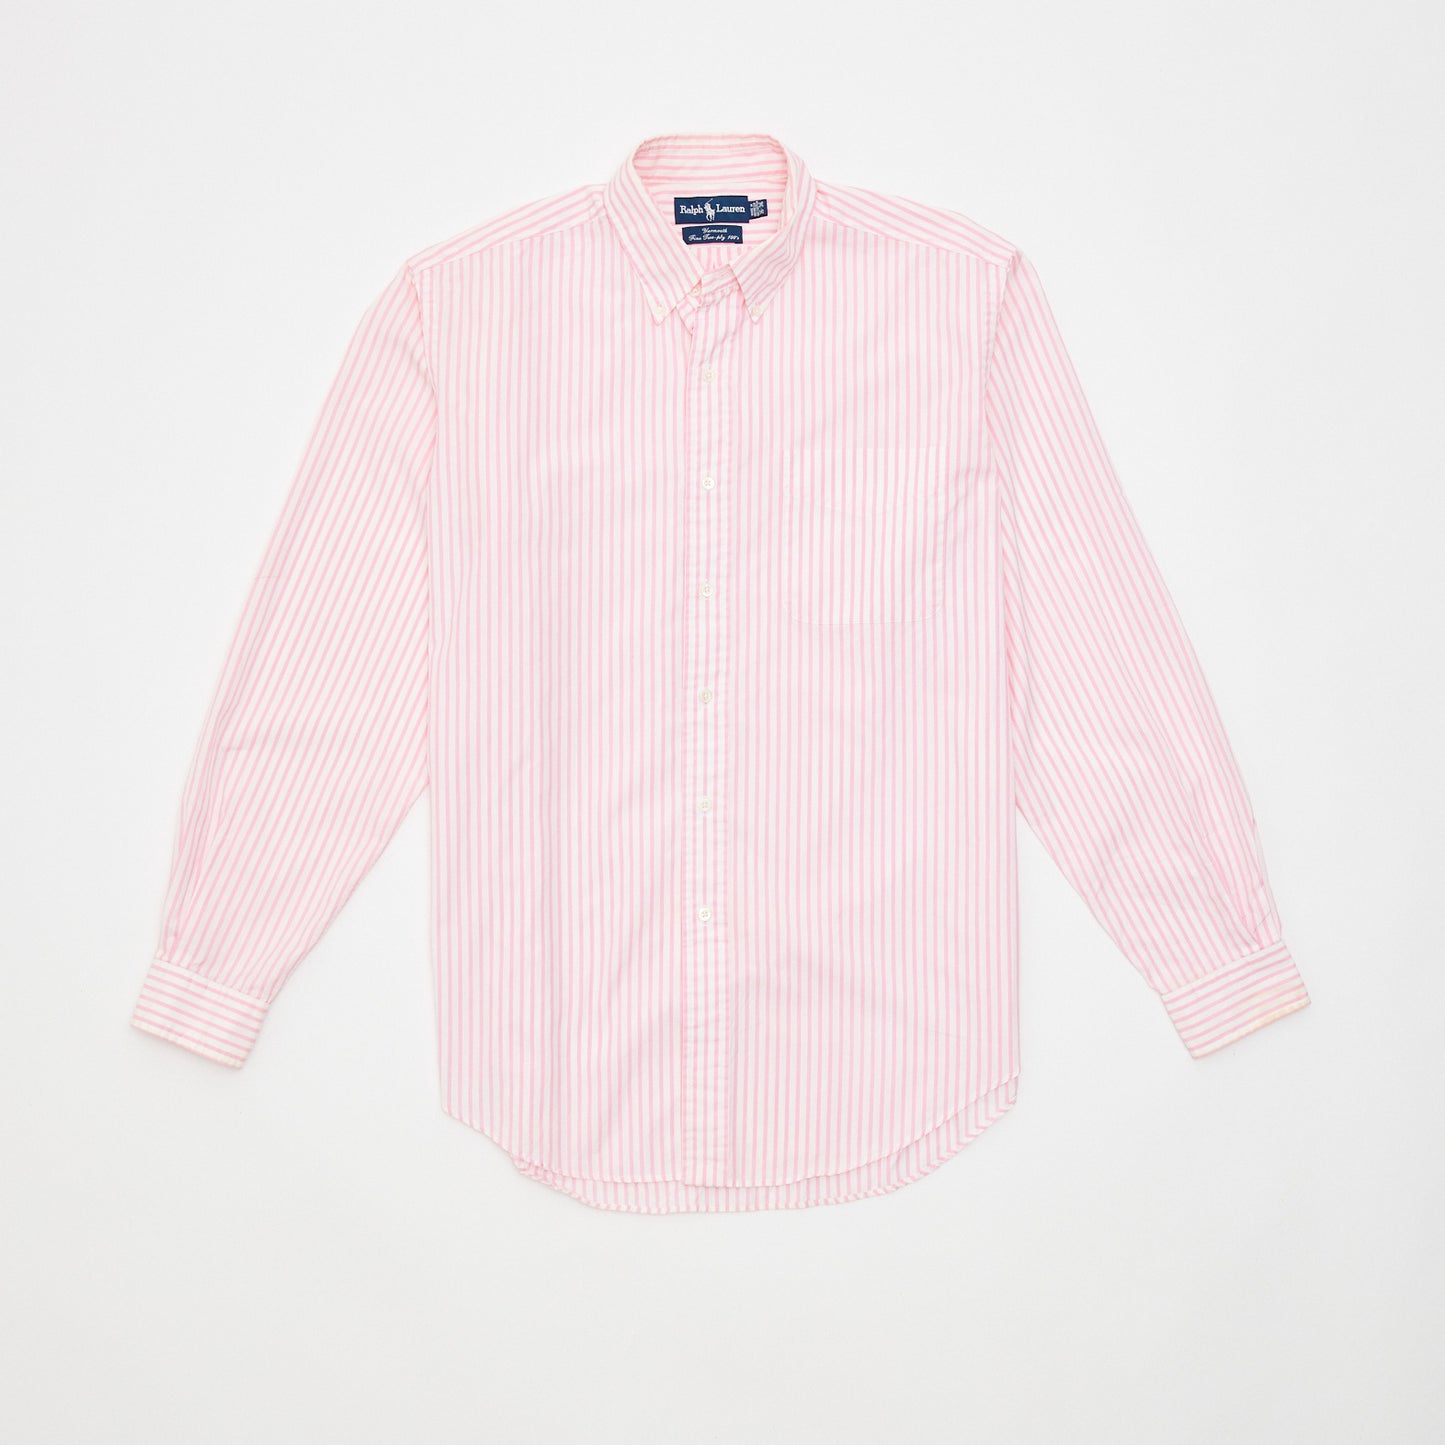 90s Ralph Lauren pink button down